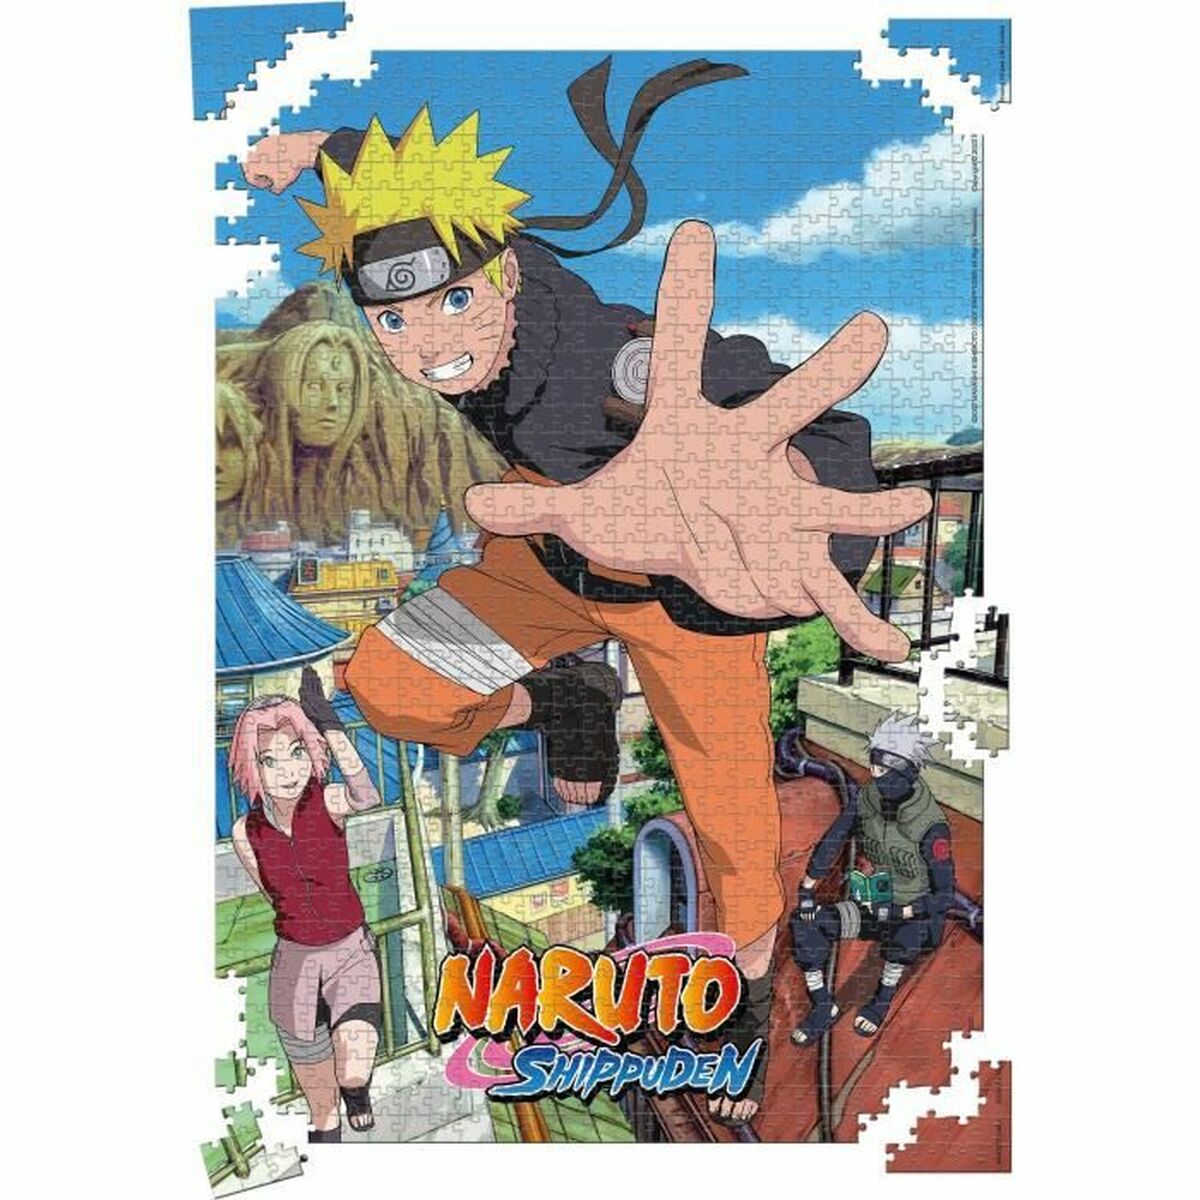 Puzzle Naruto Shippuden Return to Konoha 1000 Stücke